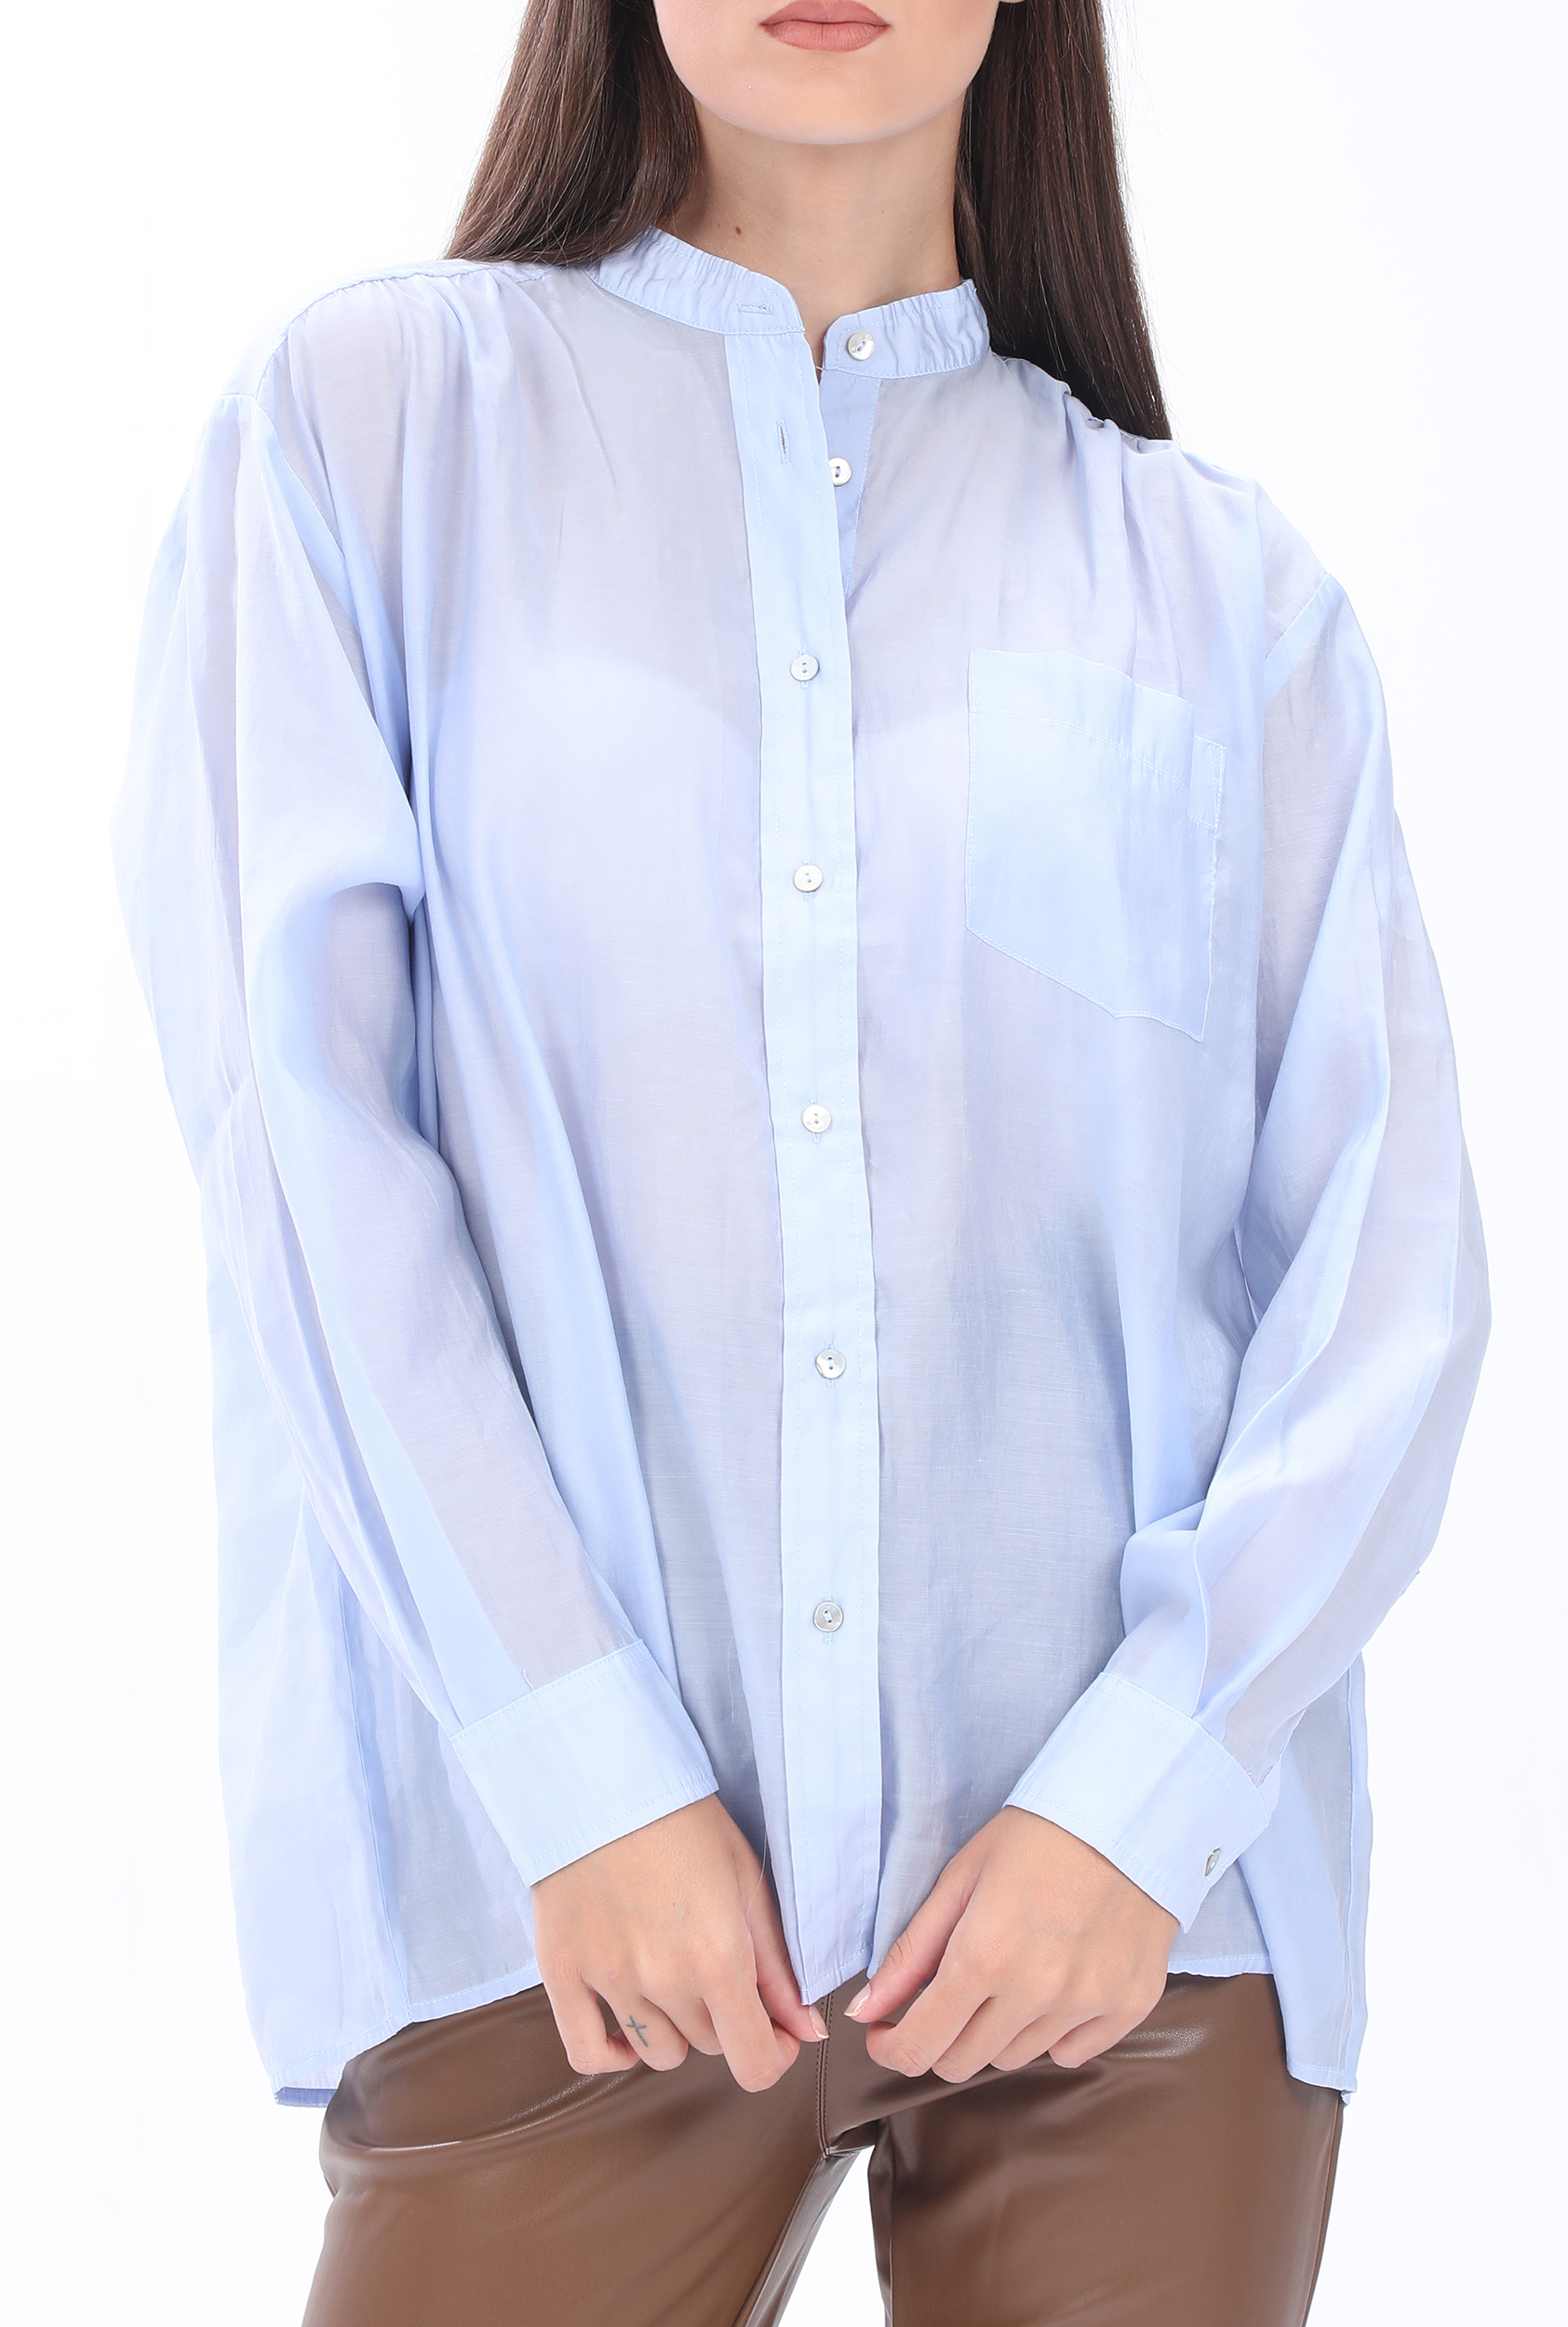 Γυναικεία/Ρούχα/Πουκάμισα/Μακρυμάνικα MOLLY BRACKEN - Γυναικείο πουκάμισο MOLLY BRACKEN μπλε